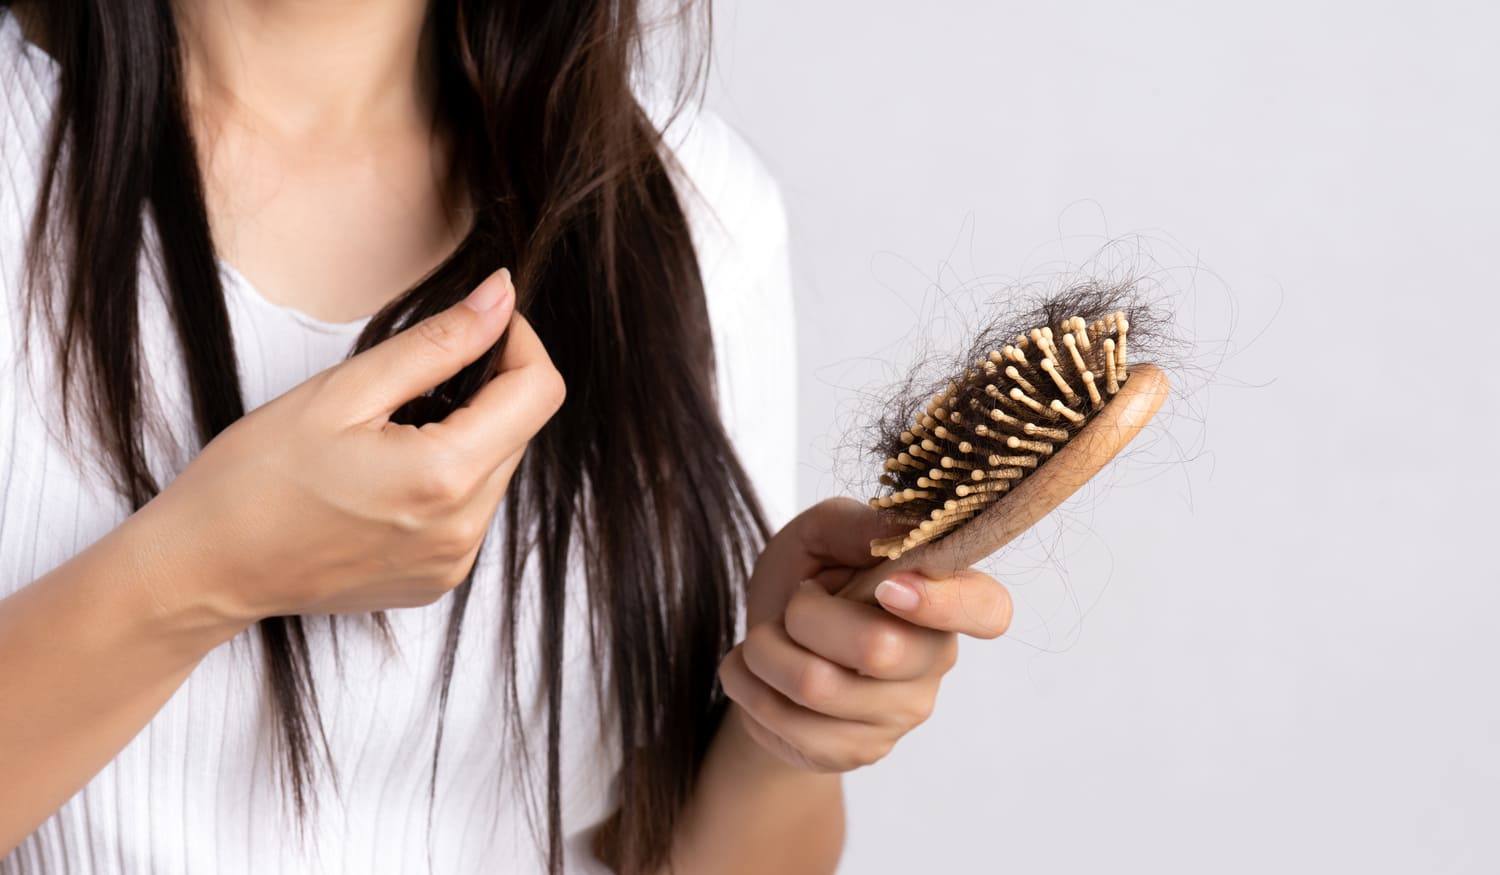 Wechseljahre und Haarausfall? 7 studienbasierte Tipps, die wirklich helfen